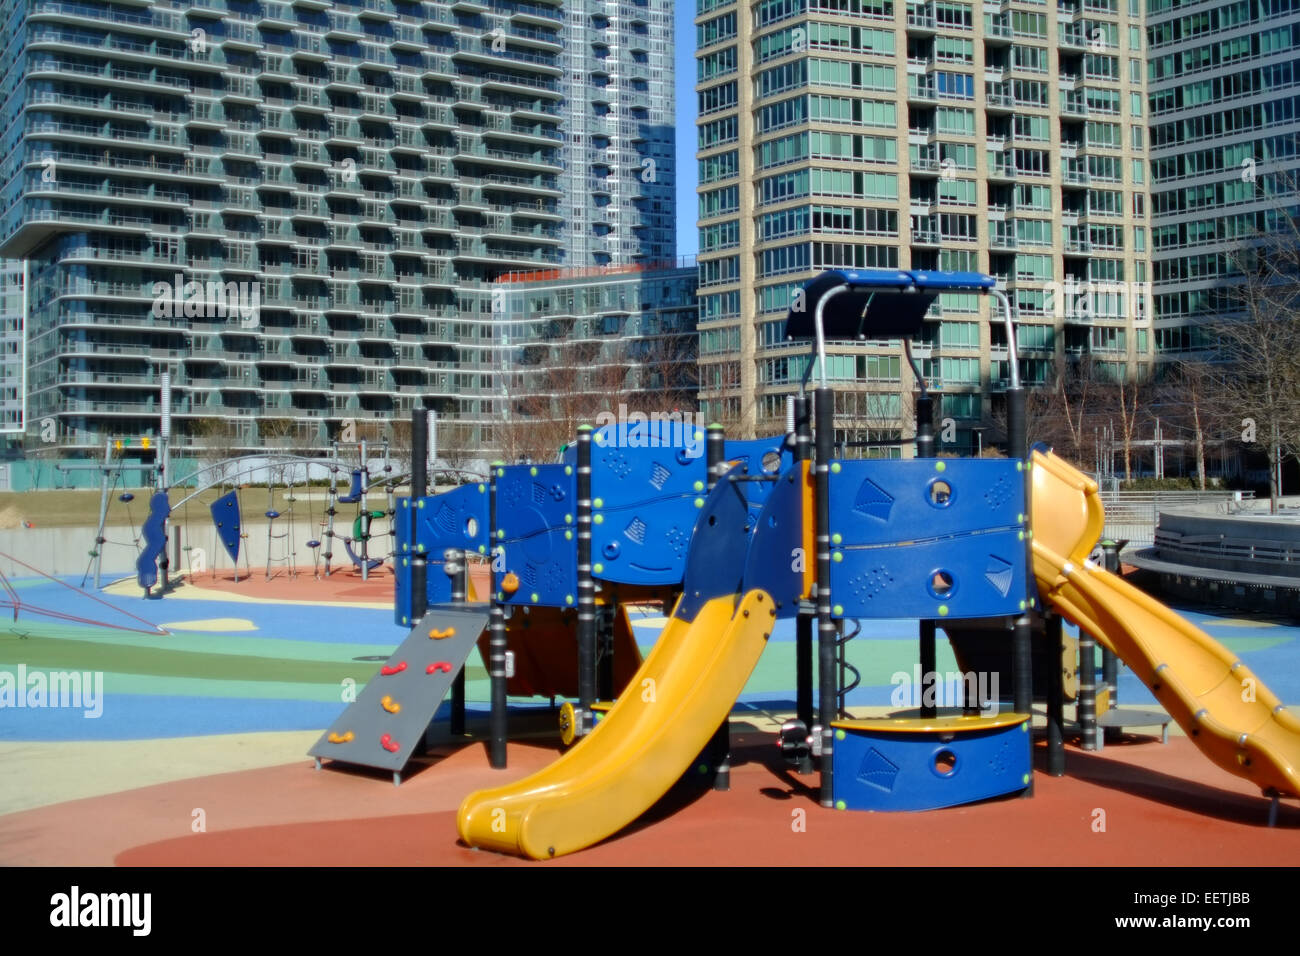 Verlassene Kinderspielplatz, der Bronx, NewYork Stockfoto